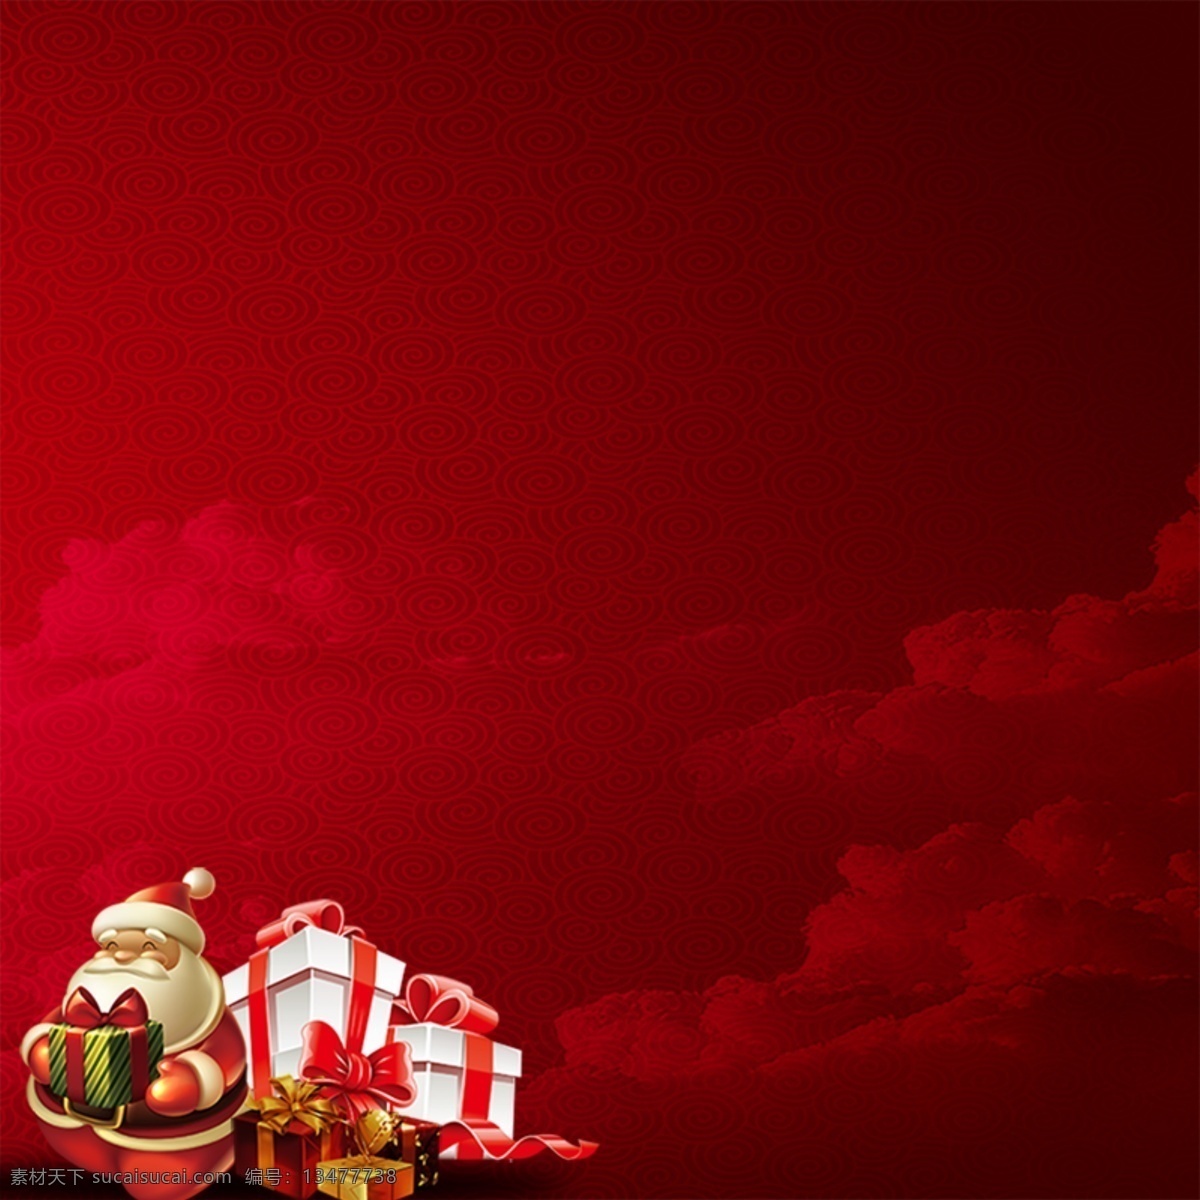 圣诞节主图 圣诞 直通 车主 图 模板 圣诞节 促销 主 红色